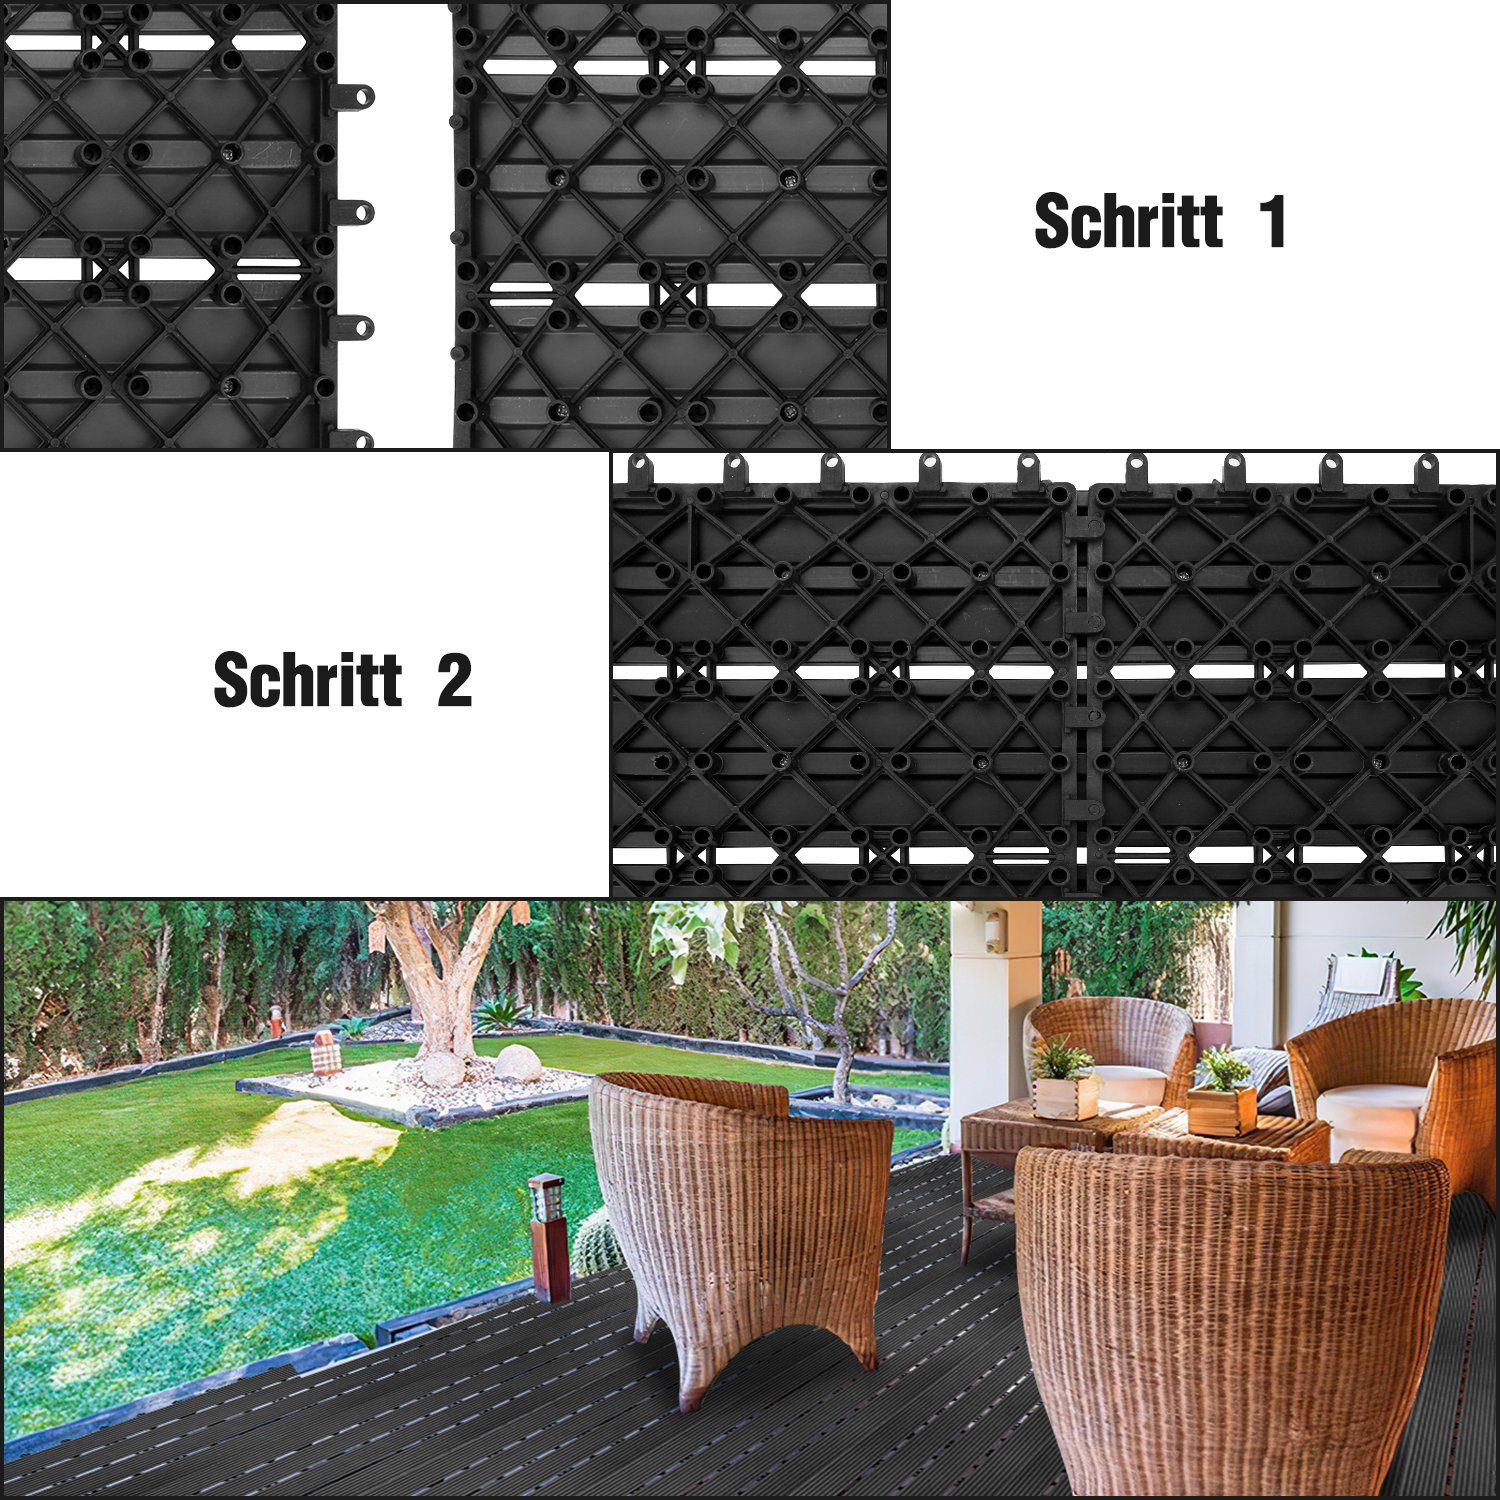 30x30cm und 1m² Bodenbelag Drainage Klicksystem Garten für Lospitch Holzoptik mit Terrassenfliesen Anthrazit Holzfliesen Holzfliesen Balkon, in